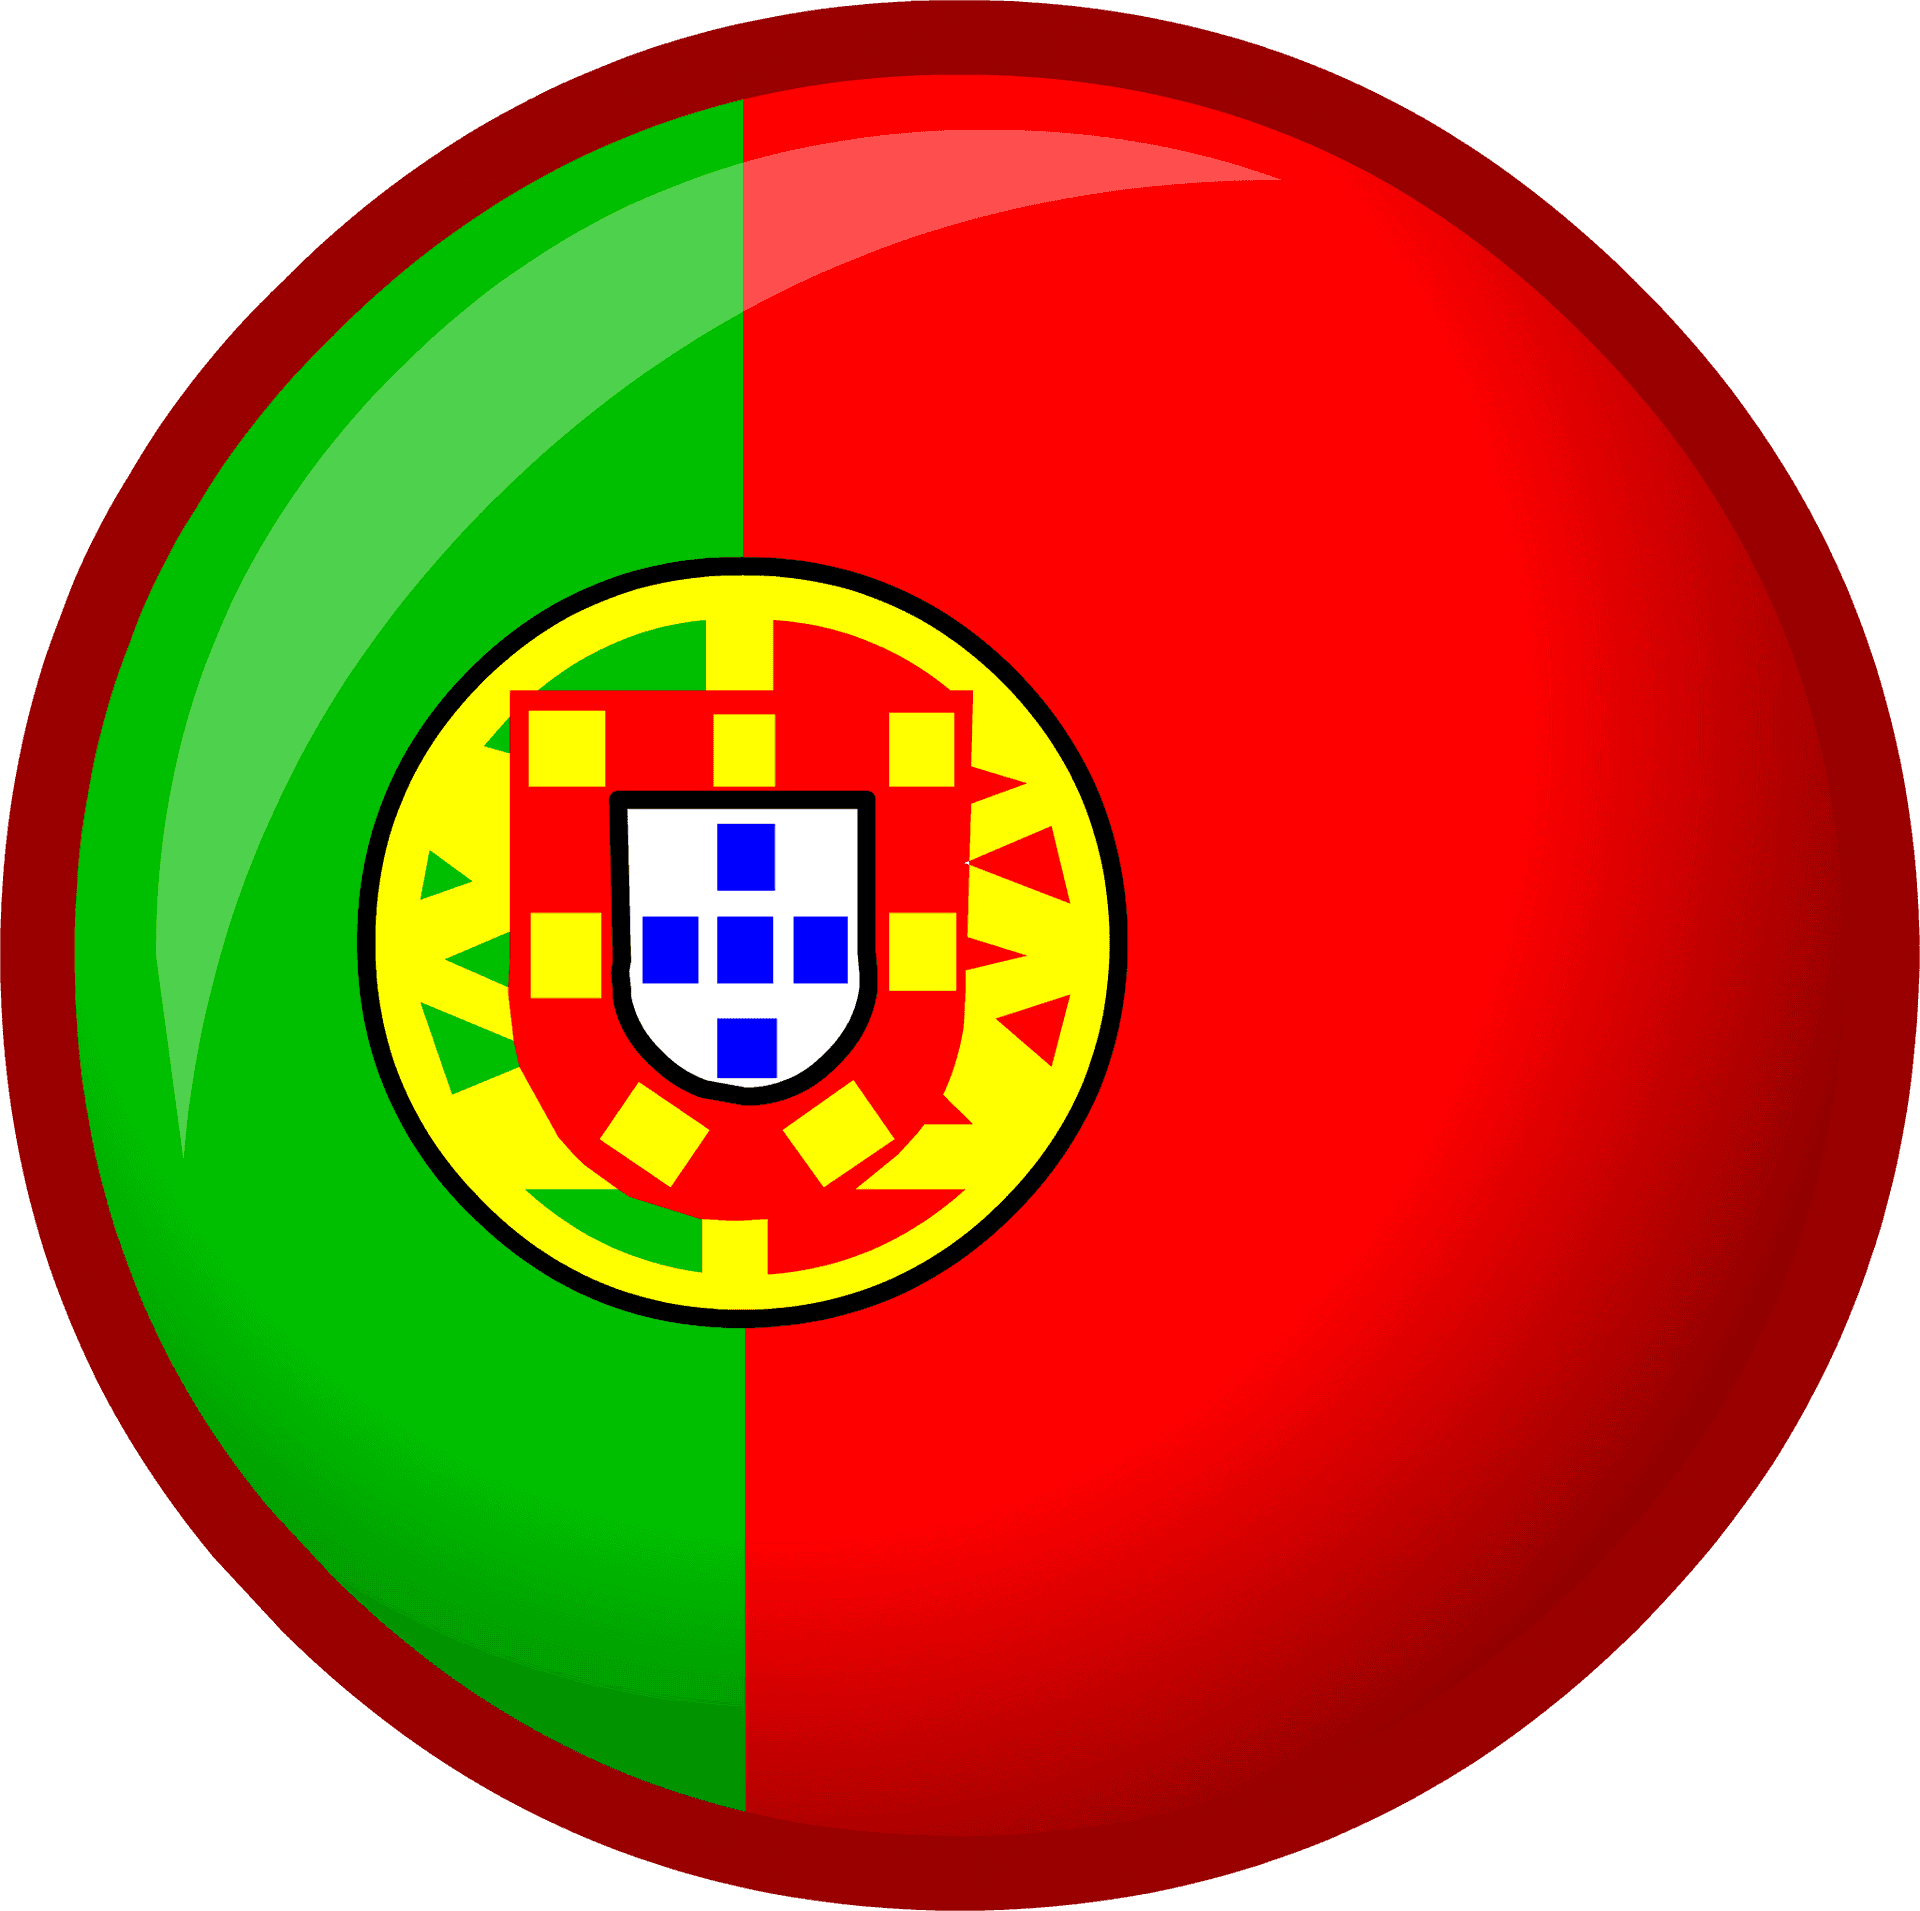 Portuguese_ Flag_ Button PNG image